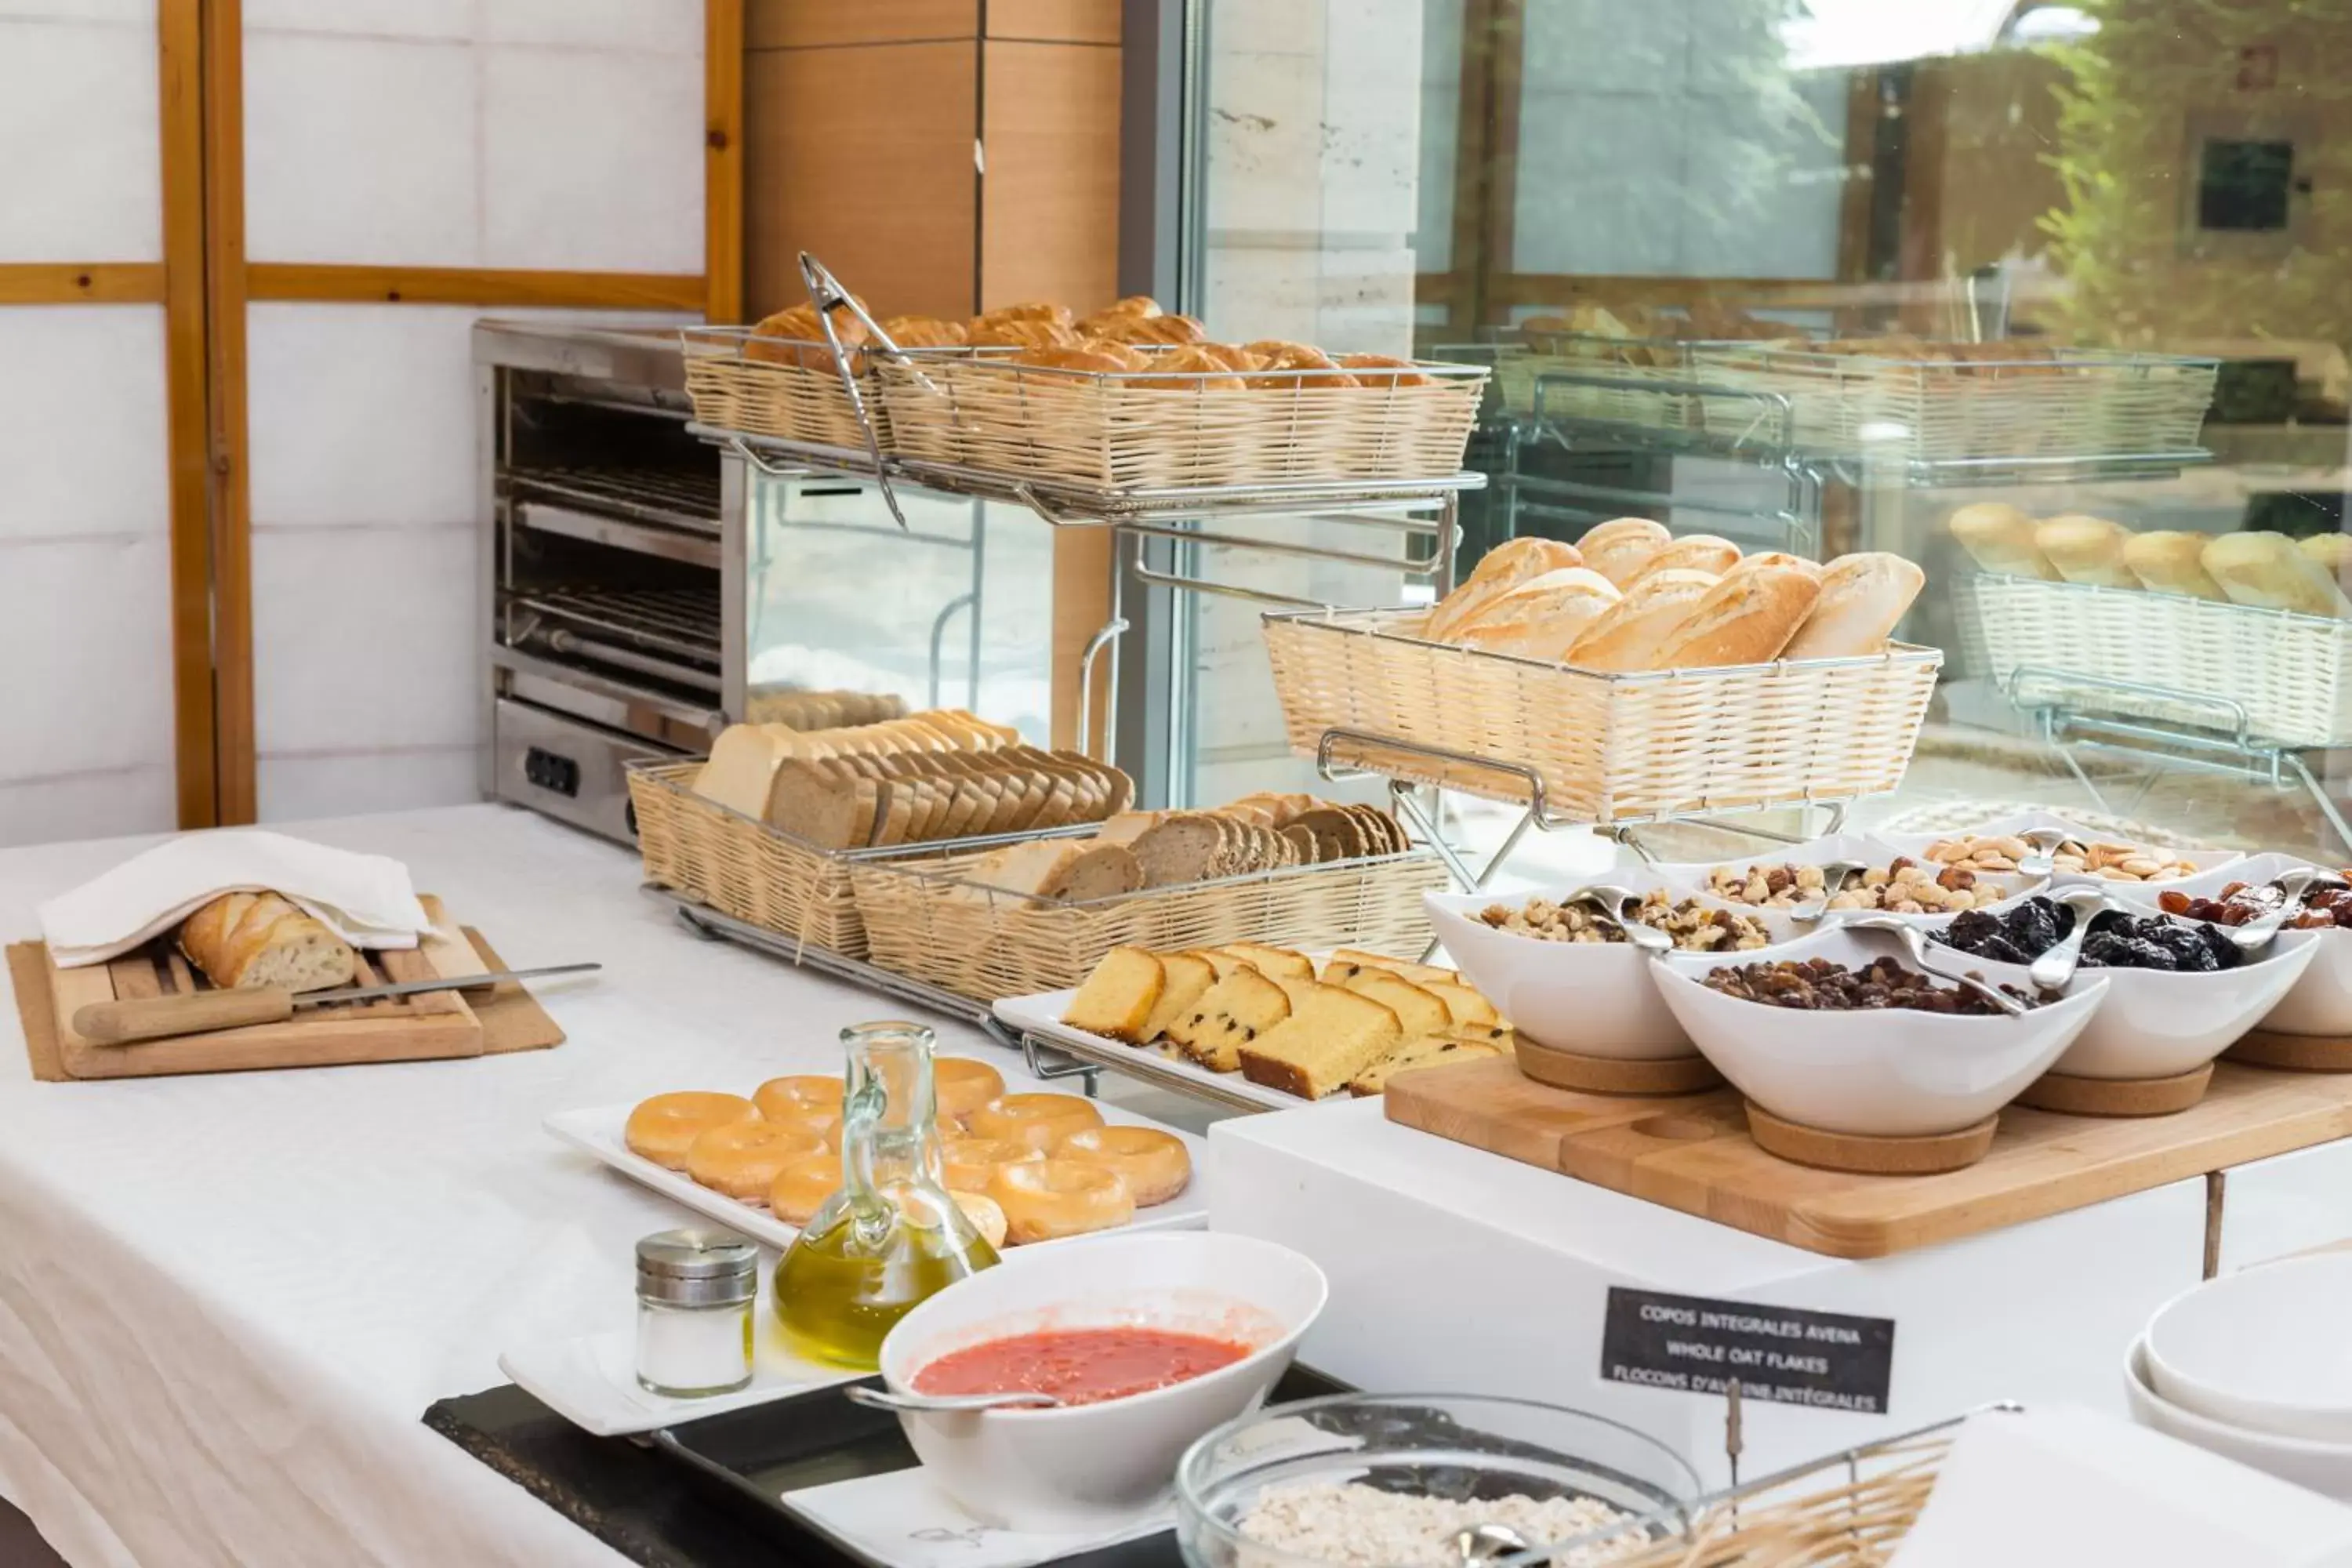 Buffet breakfast, Breakfast in Hotel Palacio de Aiete